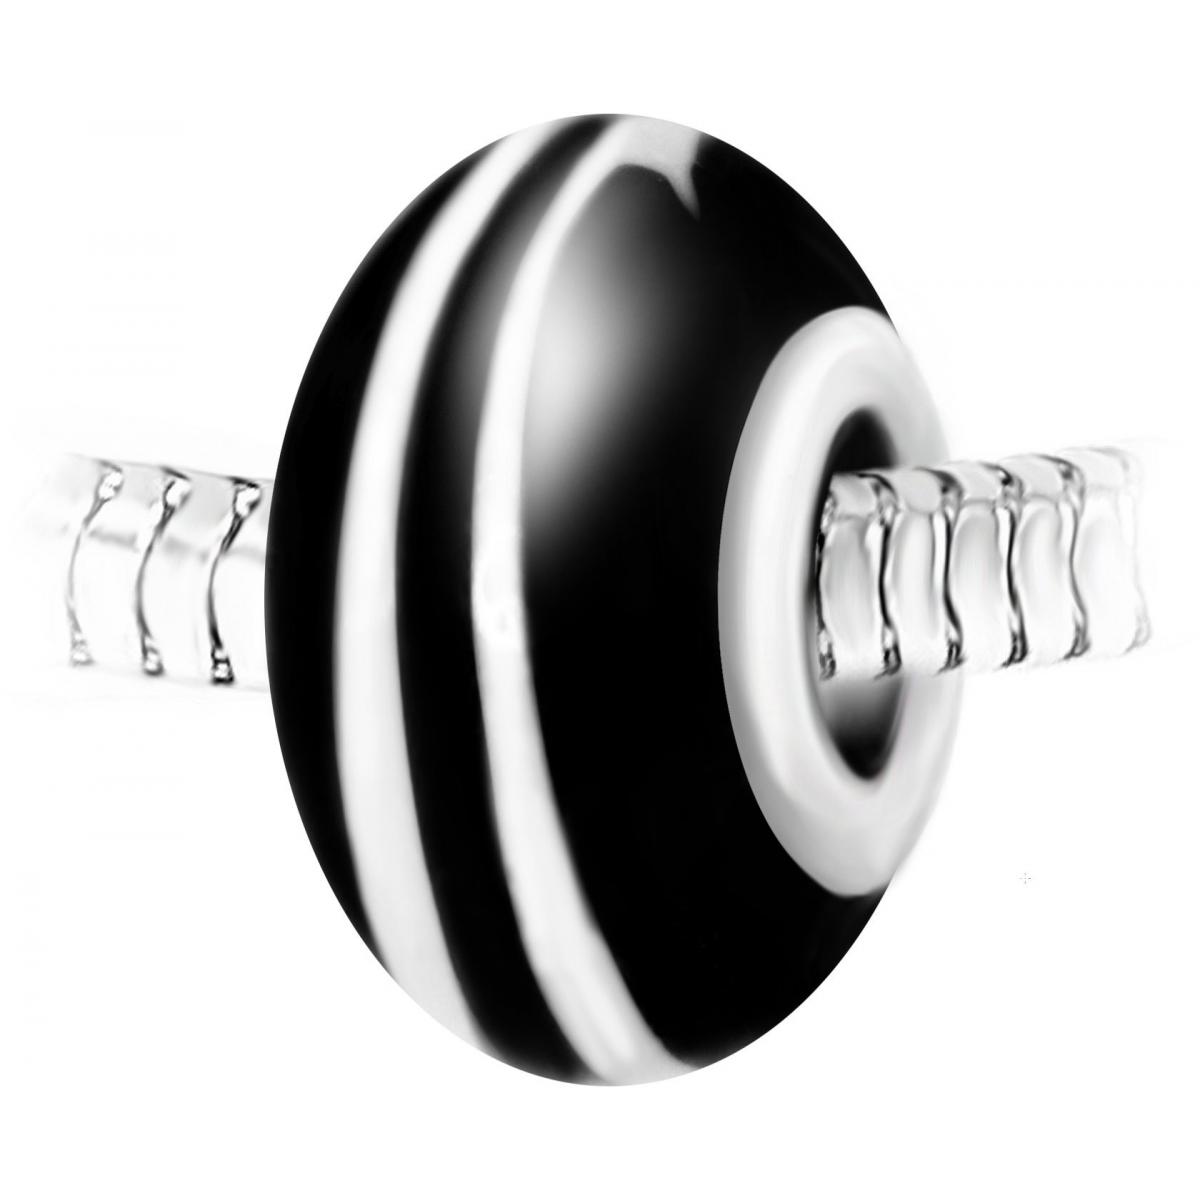 Promo : Charm perle spirale verre noir et blanc décoré main et acier par SC Crystal